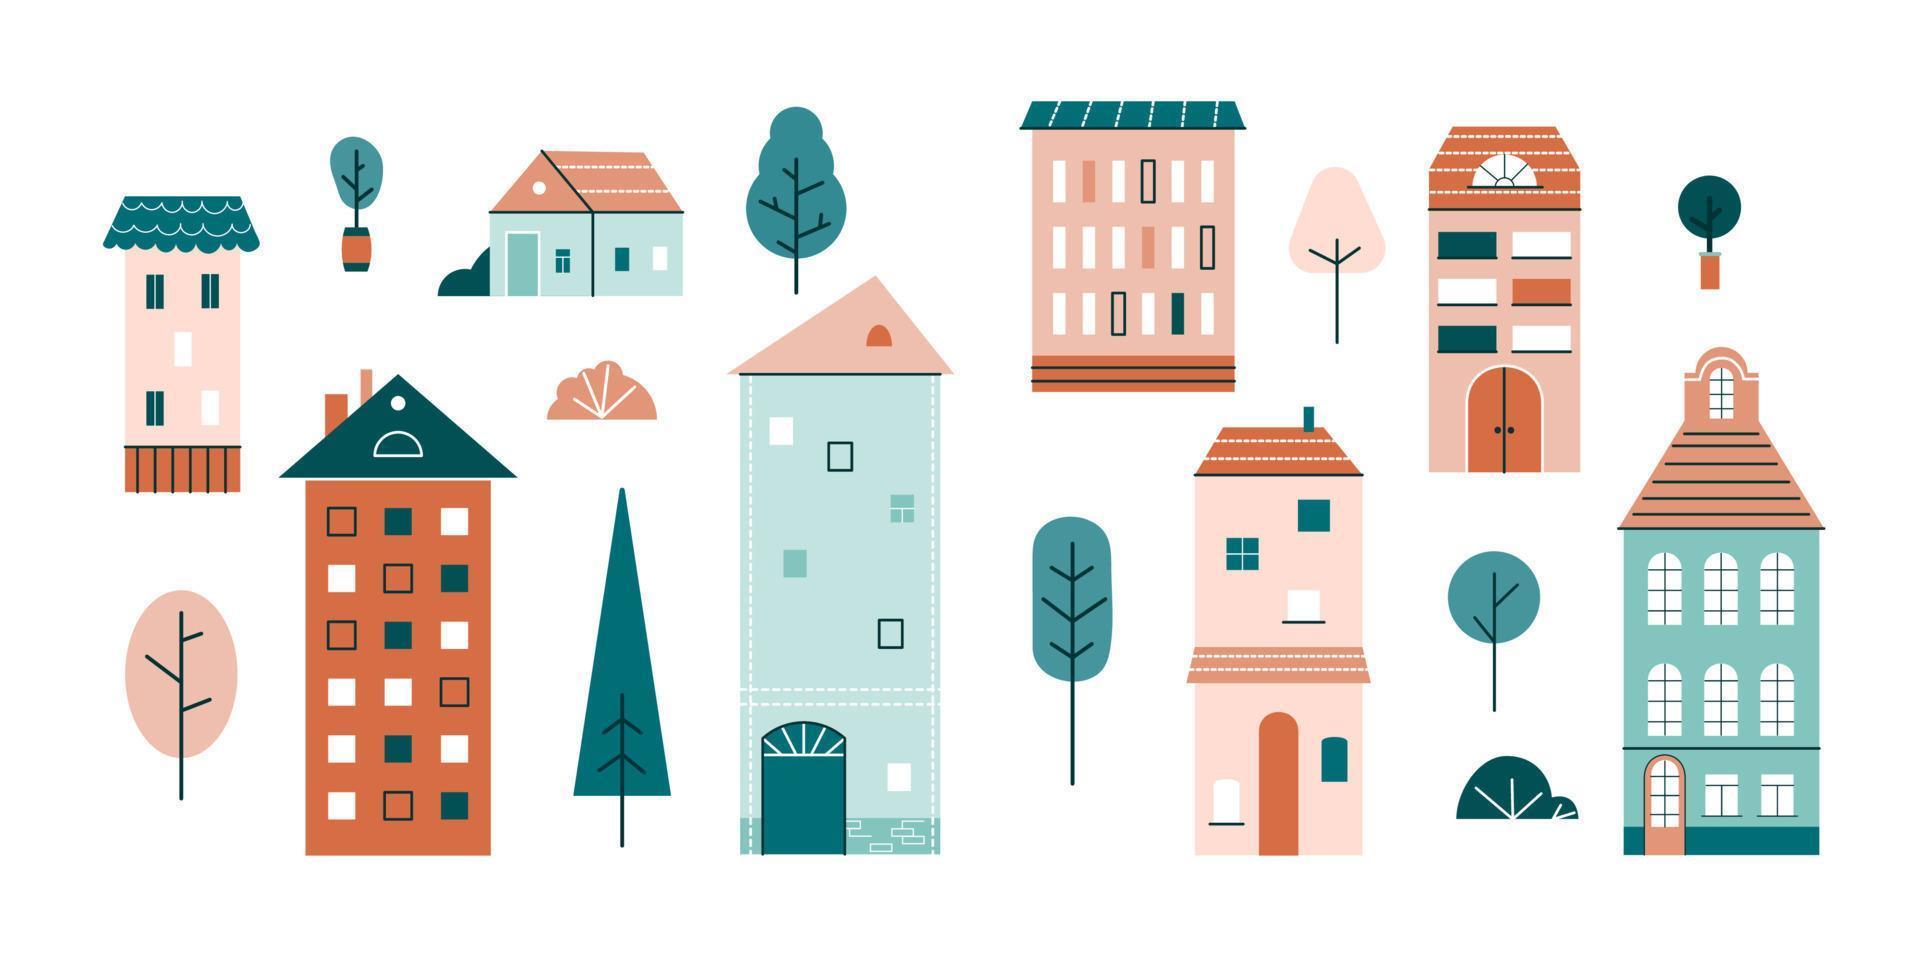 casinhas fofas, pequenos prédios, árvores e arbustos em estilo escandinavo. conjunto de casas urbanas com janelas, telhado e chaminés. ilustração em vetor plana de cor isolada no fundo branco